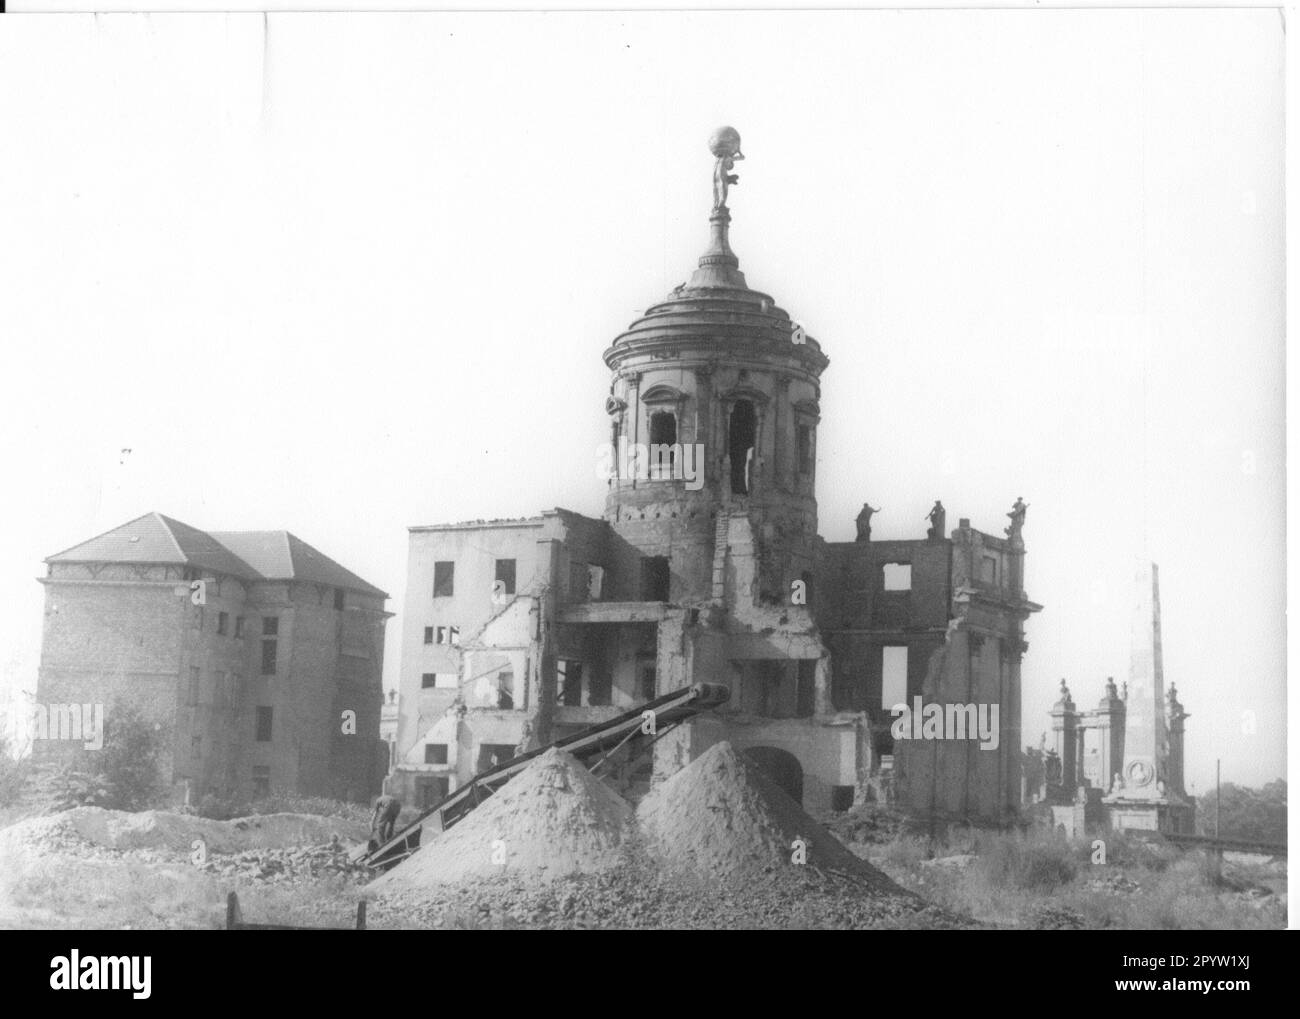 Potsdam bombes destruction guerre ruines l'ancien hôtel de ville a brûlé 1945 courroie de convoyeur obélisque sable montagnes. historique. Photo: MAZ/Horst Hanske [traduction automatique] Banque D'Images